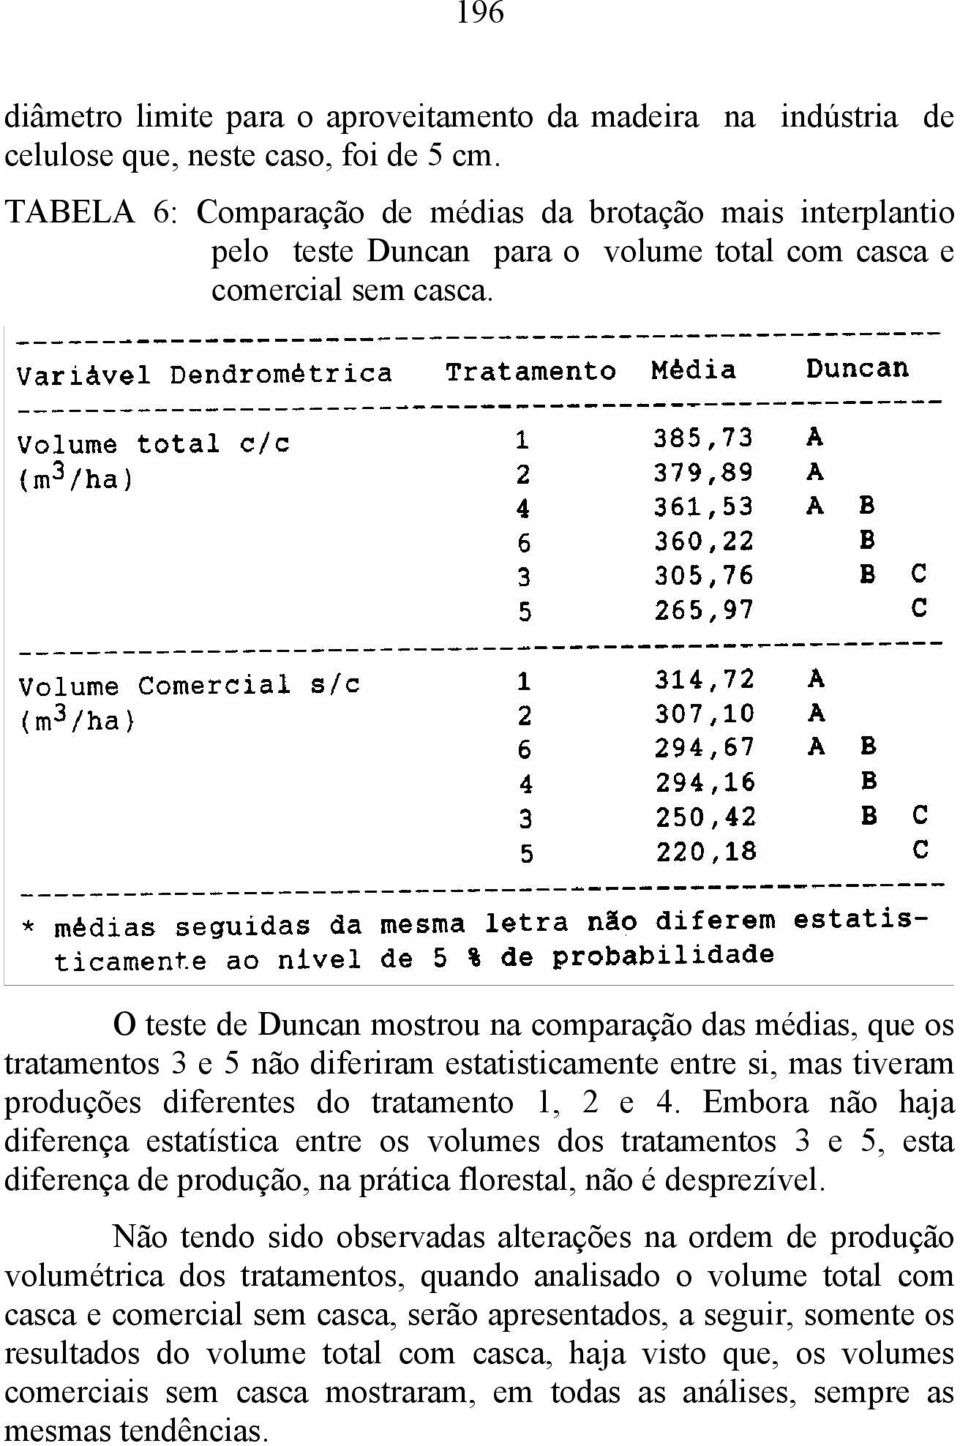 O teste de Duncan mostrou na comparação das médias, que os tratamentos 3 e 5 não diferiram estatisticamente entre si, mas tiveram produções diferentes do tratamento 1, 2 e 4.